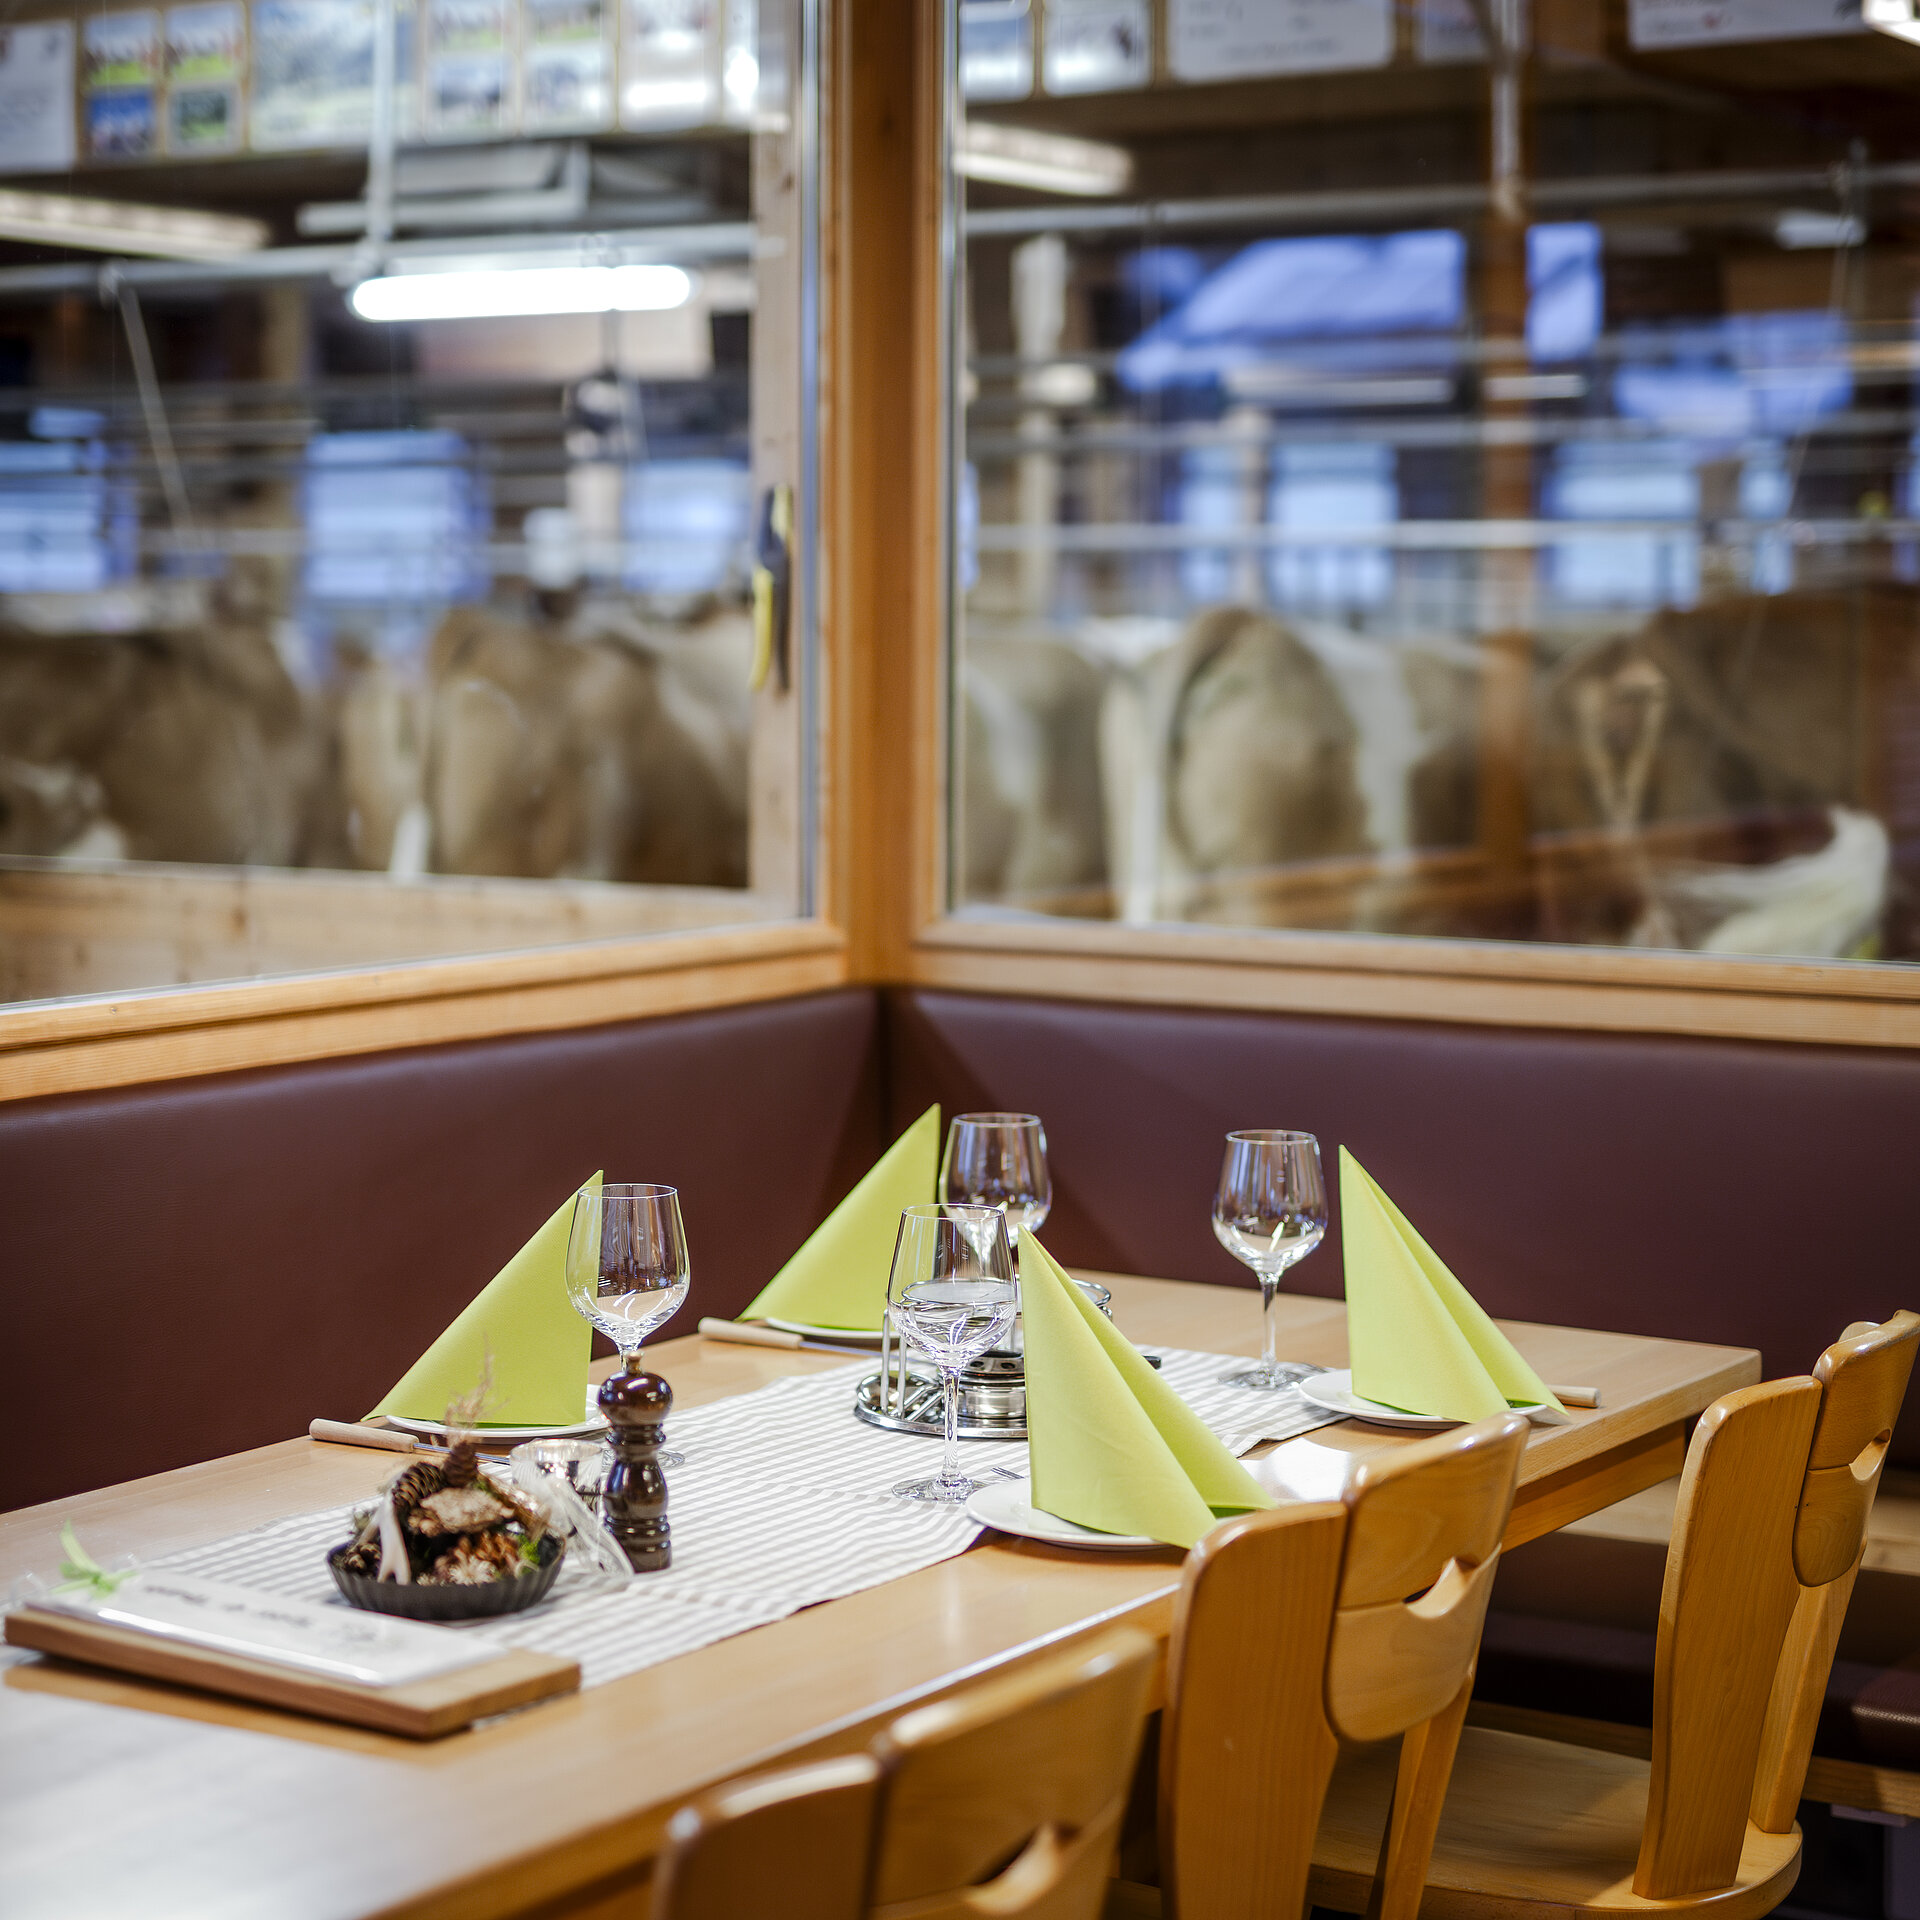 Der Ecktisch in Michels Stallbeizli ist eingedeckt mit grünen Servietten, Weinglässern und Fondue-Caquelon. Neben der Eckbank stehen drei Holzstühle am Tisch und im Hintergrund kann man durch die Fensterscheibe die Kühe im Stall beobachten.